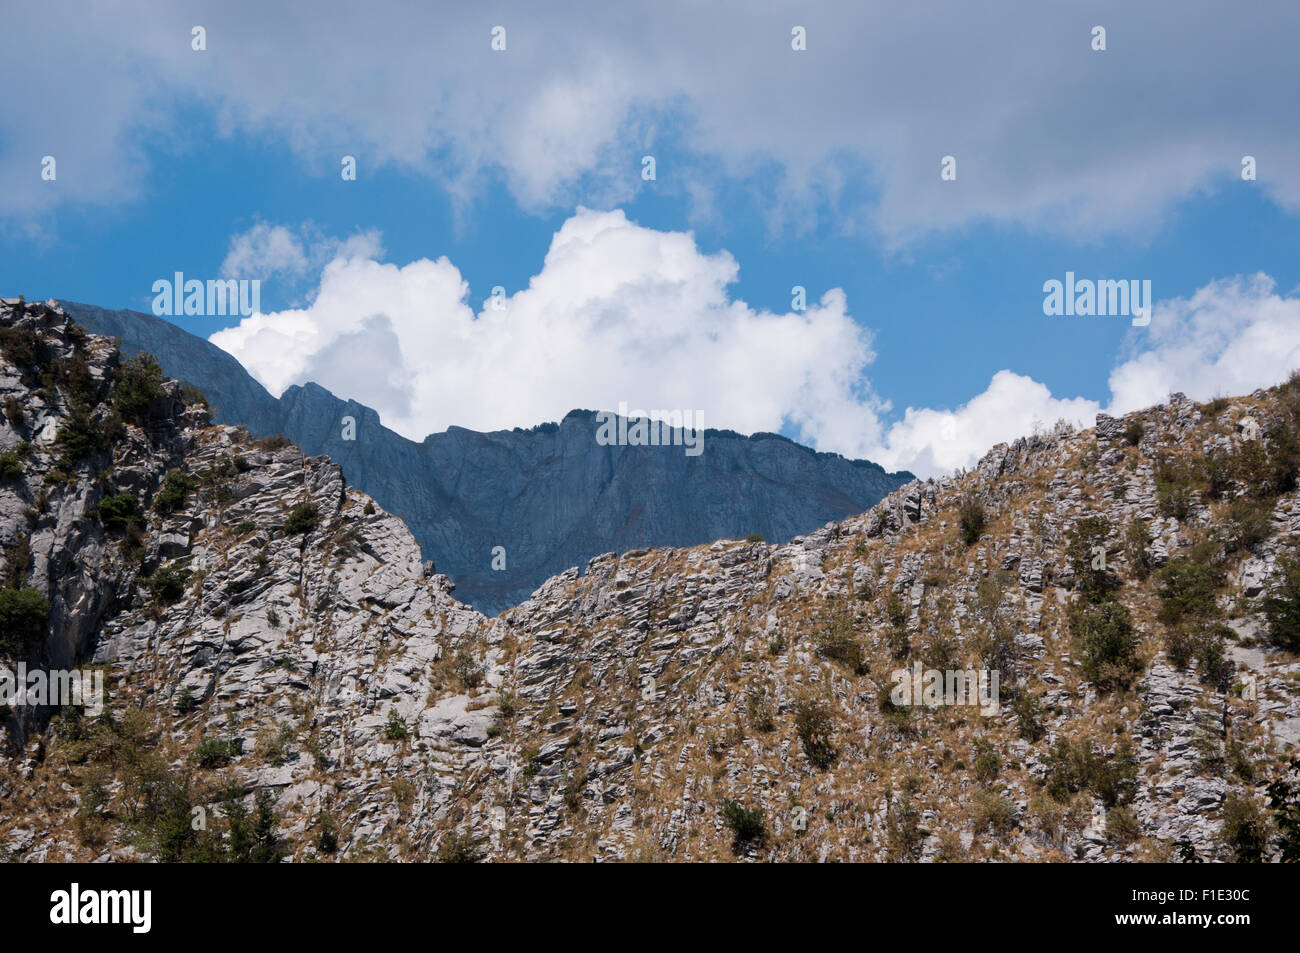 Felswände aus Marmor, Apuan alps, Garfagnana, Tuscany, Italy Stock Photo